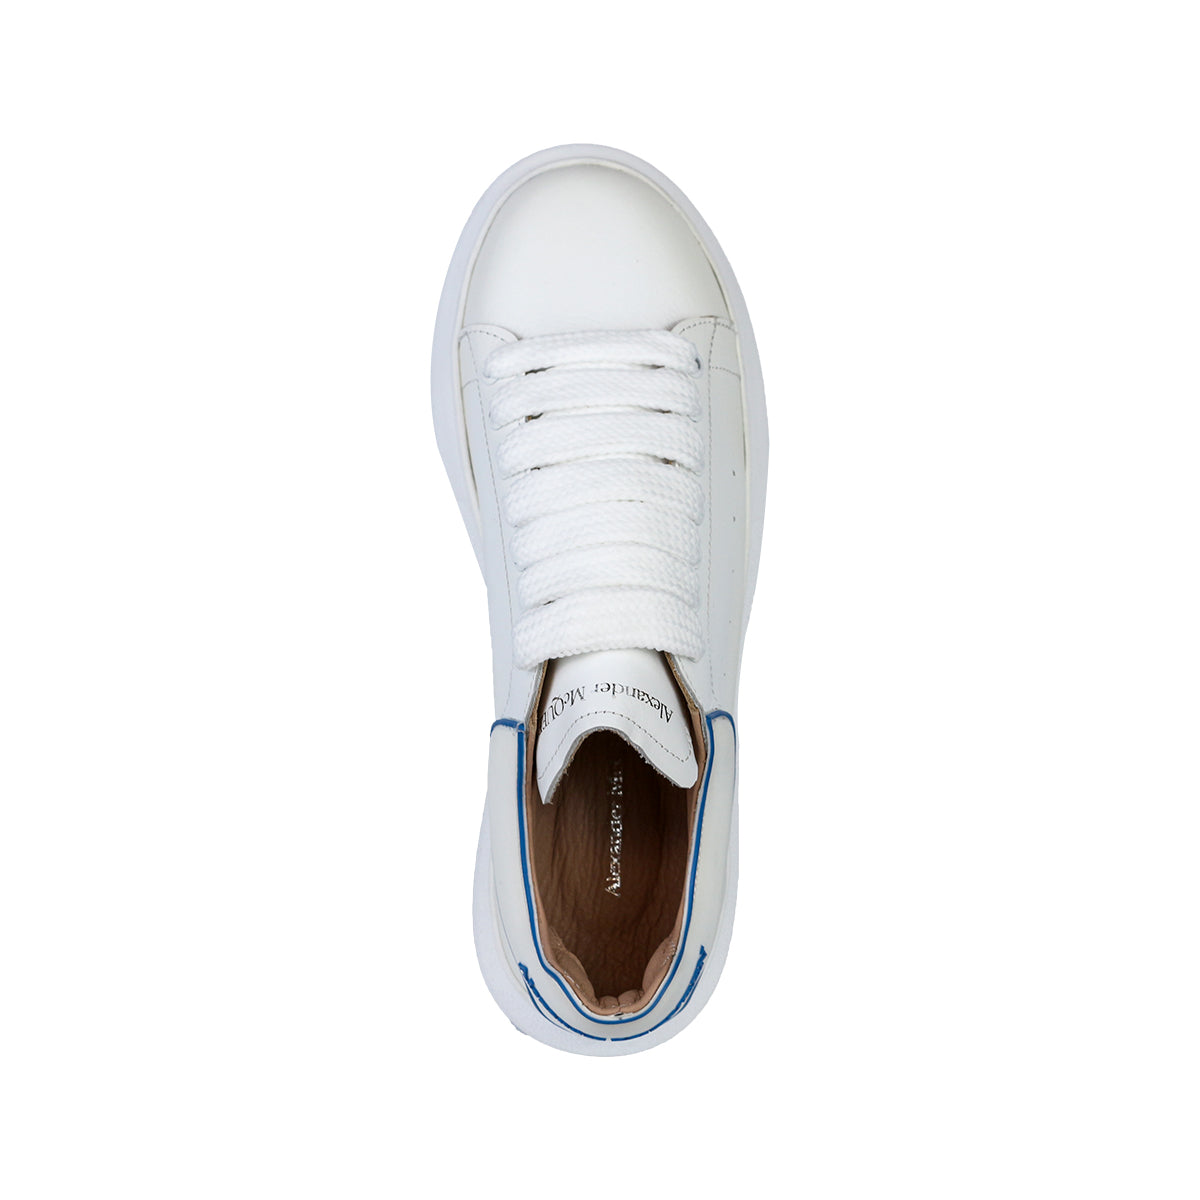 Alexander McQueen Kadın Bağcıklı Hakiki Deri Beyaz Mavi Çizgi Detaylı Sneaker Ayakkabı